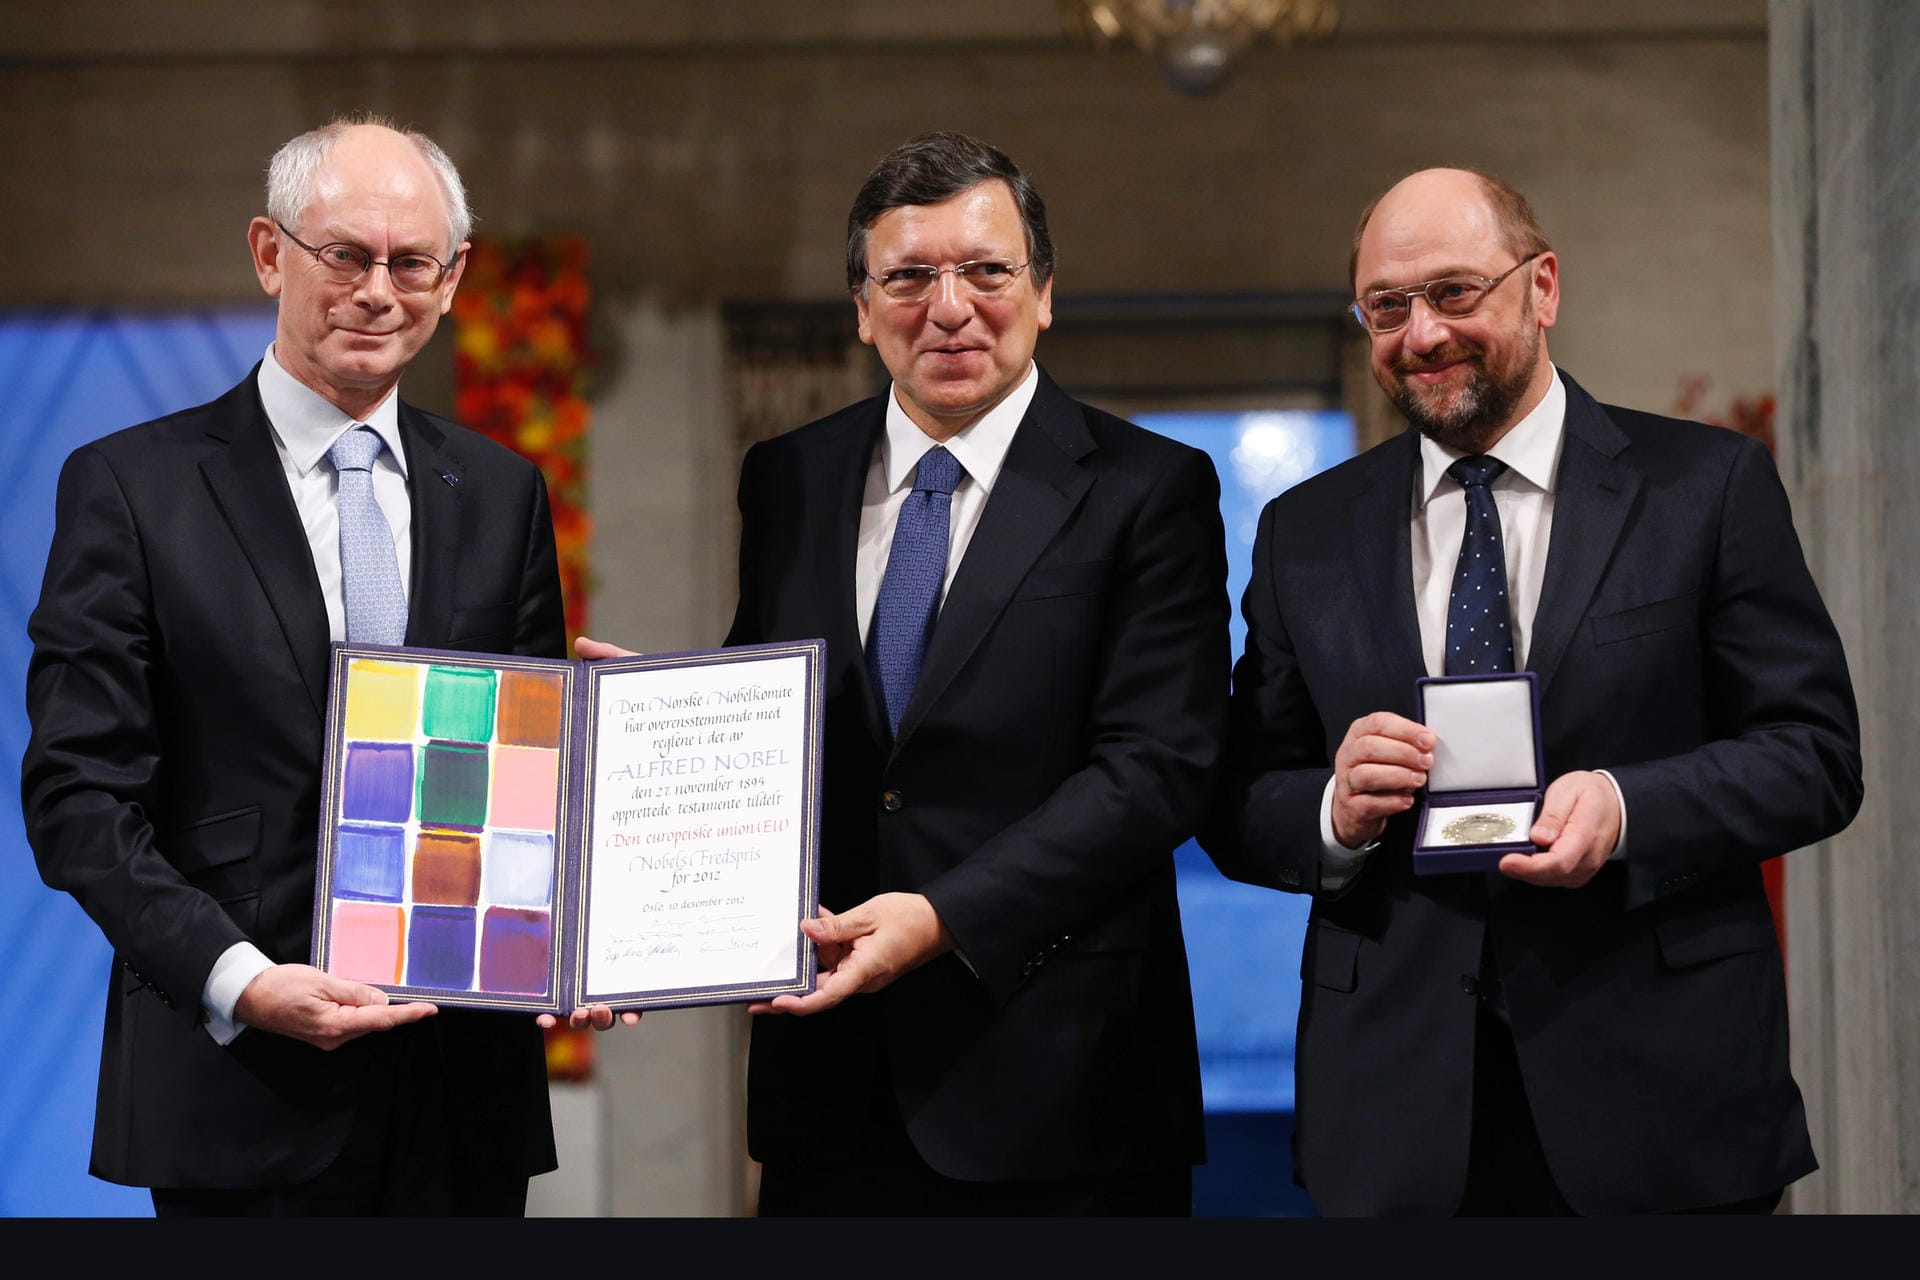 2012 wurde die Europäische Union für für über sechs Jahrzehnte, die zur Entwicklung von Frieden und Versöhnung, Demokratie und Menschenrechten in Europa beitrugen, mit dem Friedensnobelpreis ausgezeichnet. Hier nehmen der damalige Präsident des Europäischen Rates, Herman Van Rompuy (l), der Europäische Kommissionspräsident, Jose Manuel Barroso, und der Europäische Parlamentspräsident, Martin Schulz (r), die Urkunde entgegen.